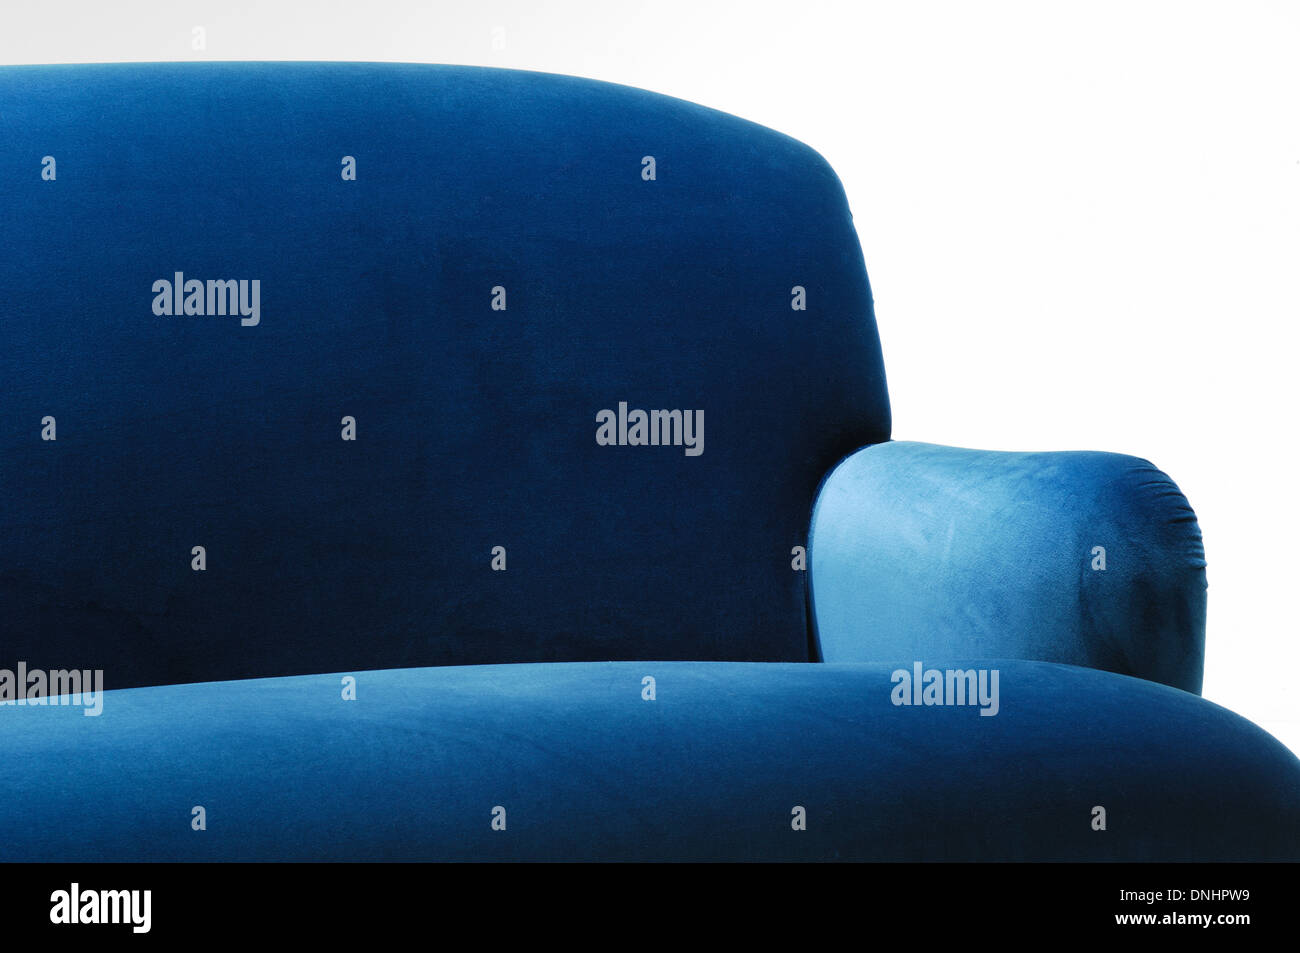 Une section d'un confortable canapé en daim bleu mobilier de la table. Banque D'Images